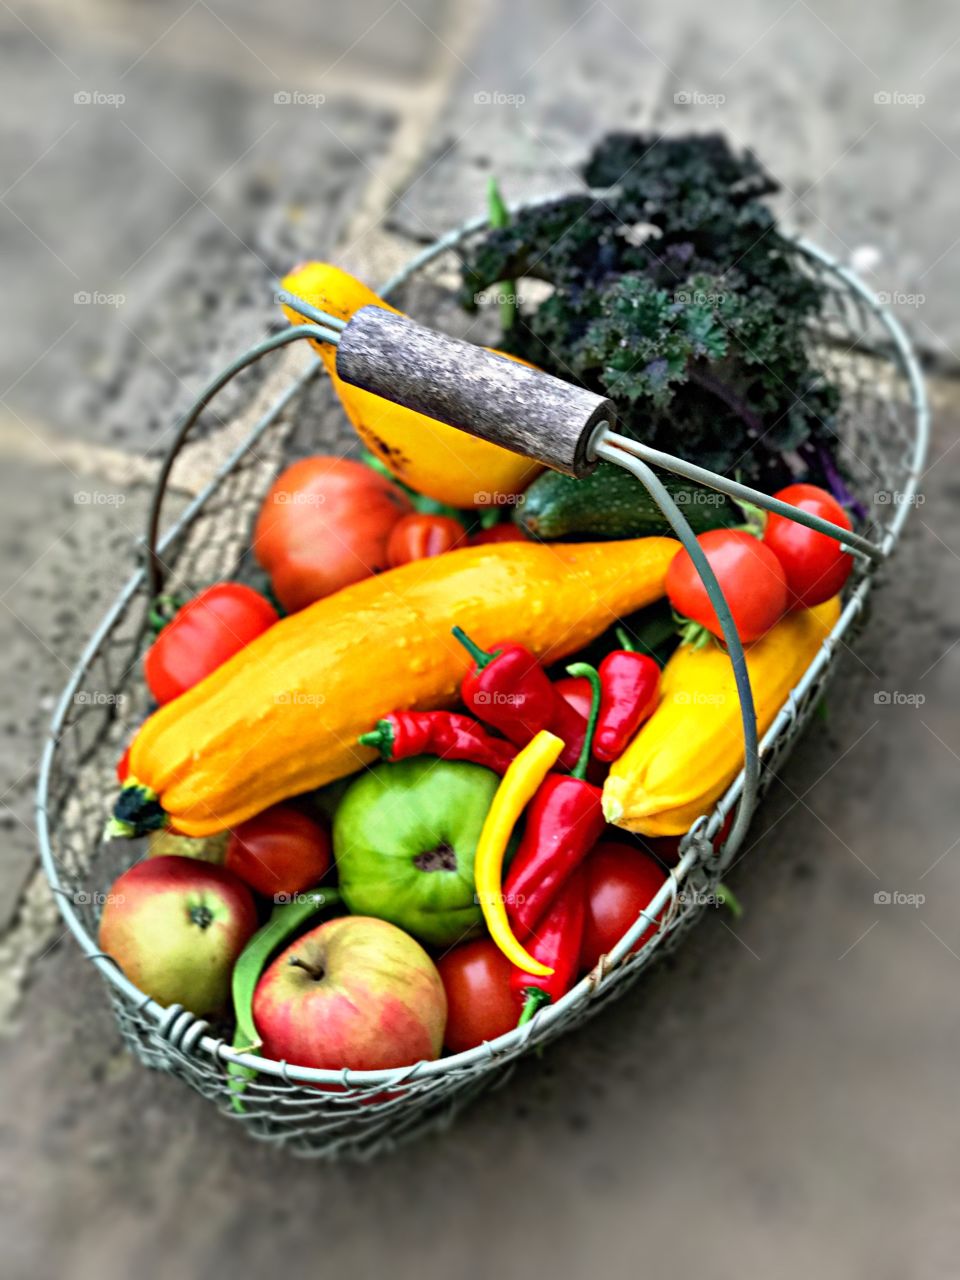 Vegetables in basket 